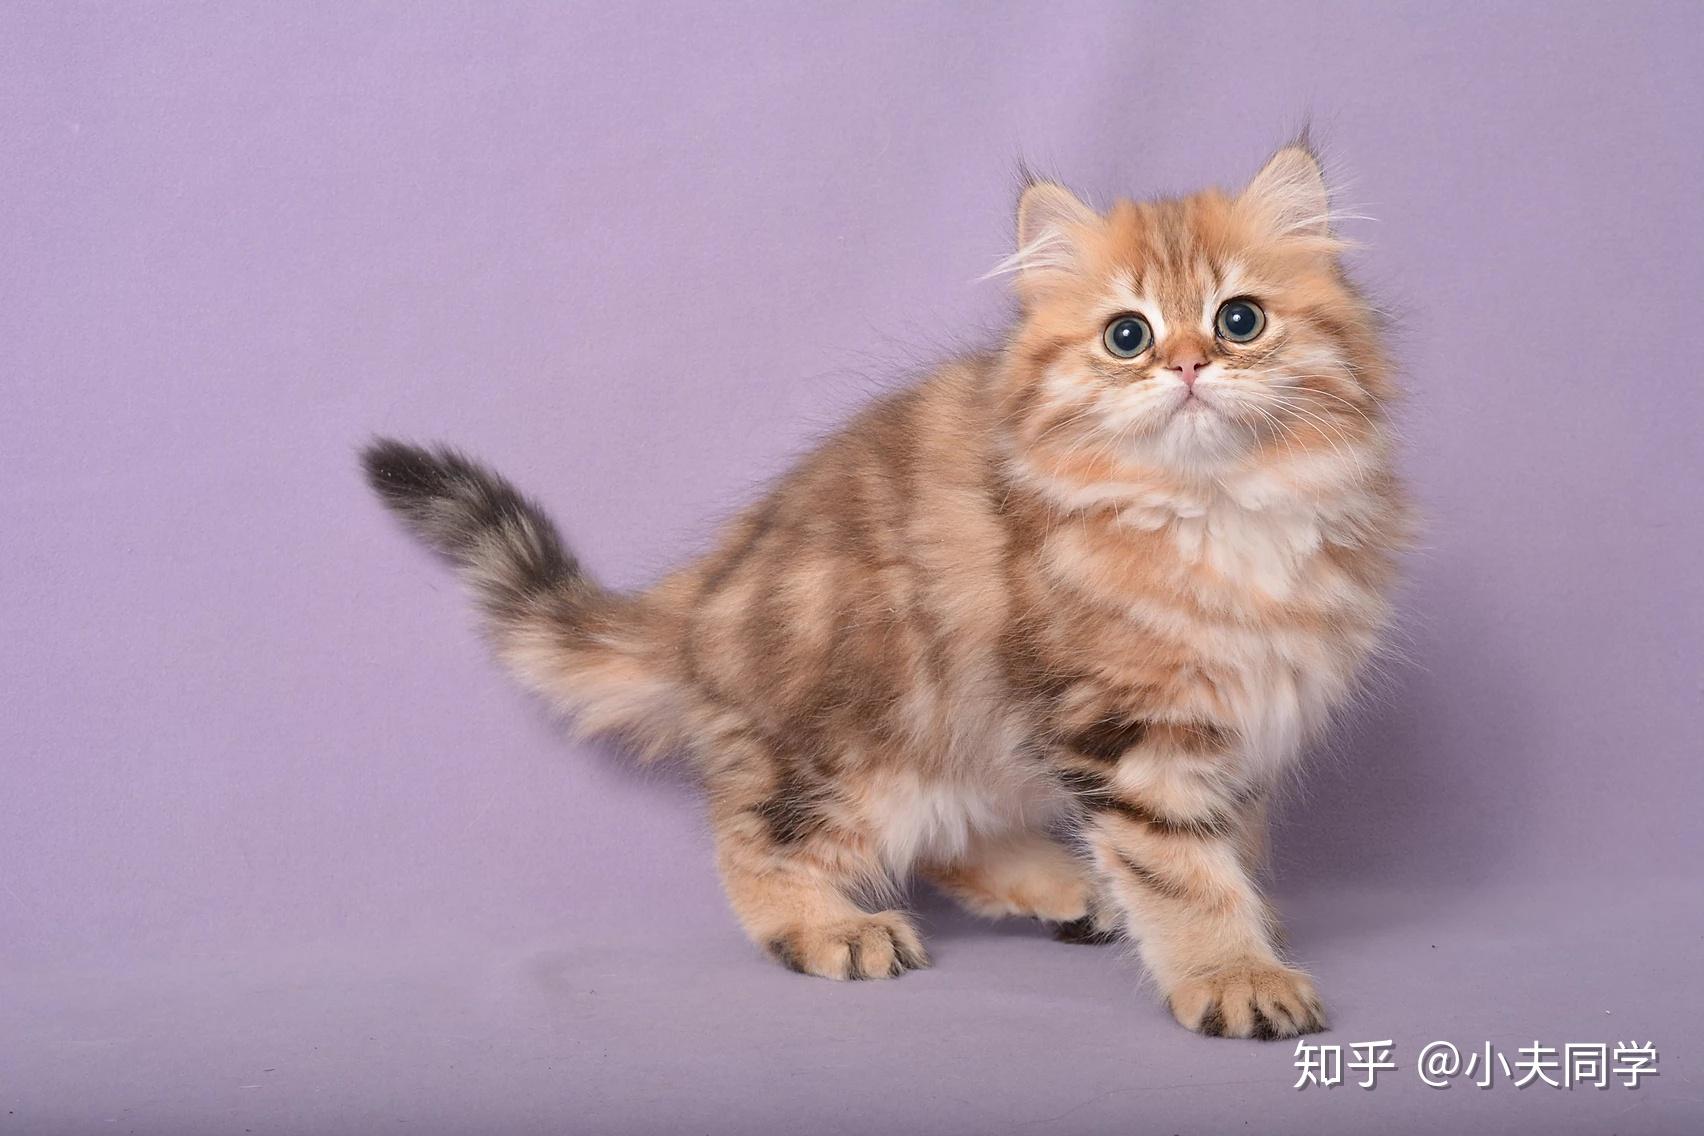 广州哪里有英短乳白高地长毛猫咪买？ - 知乎